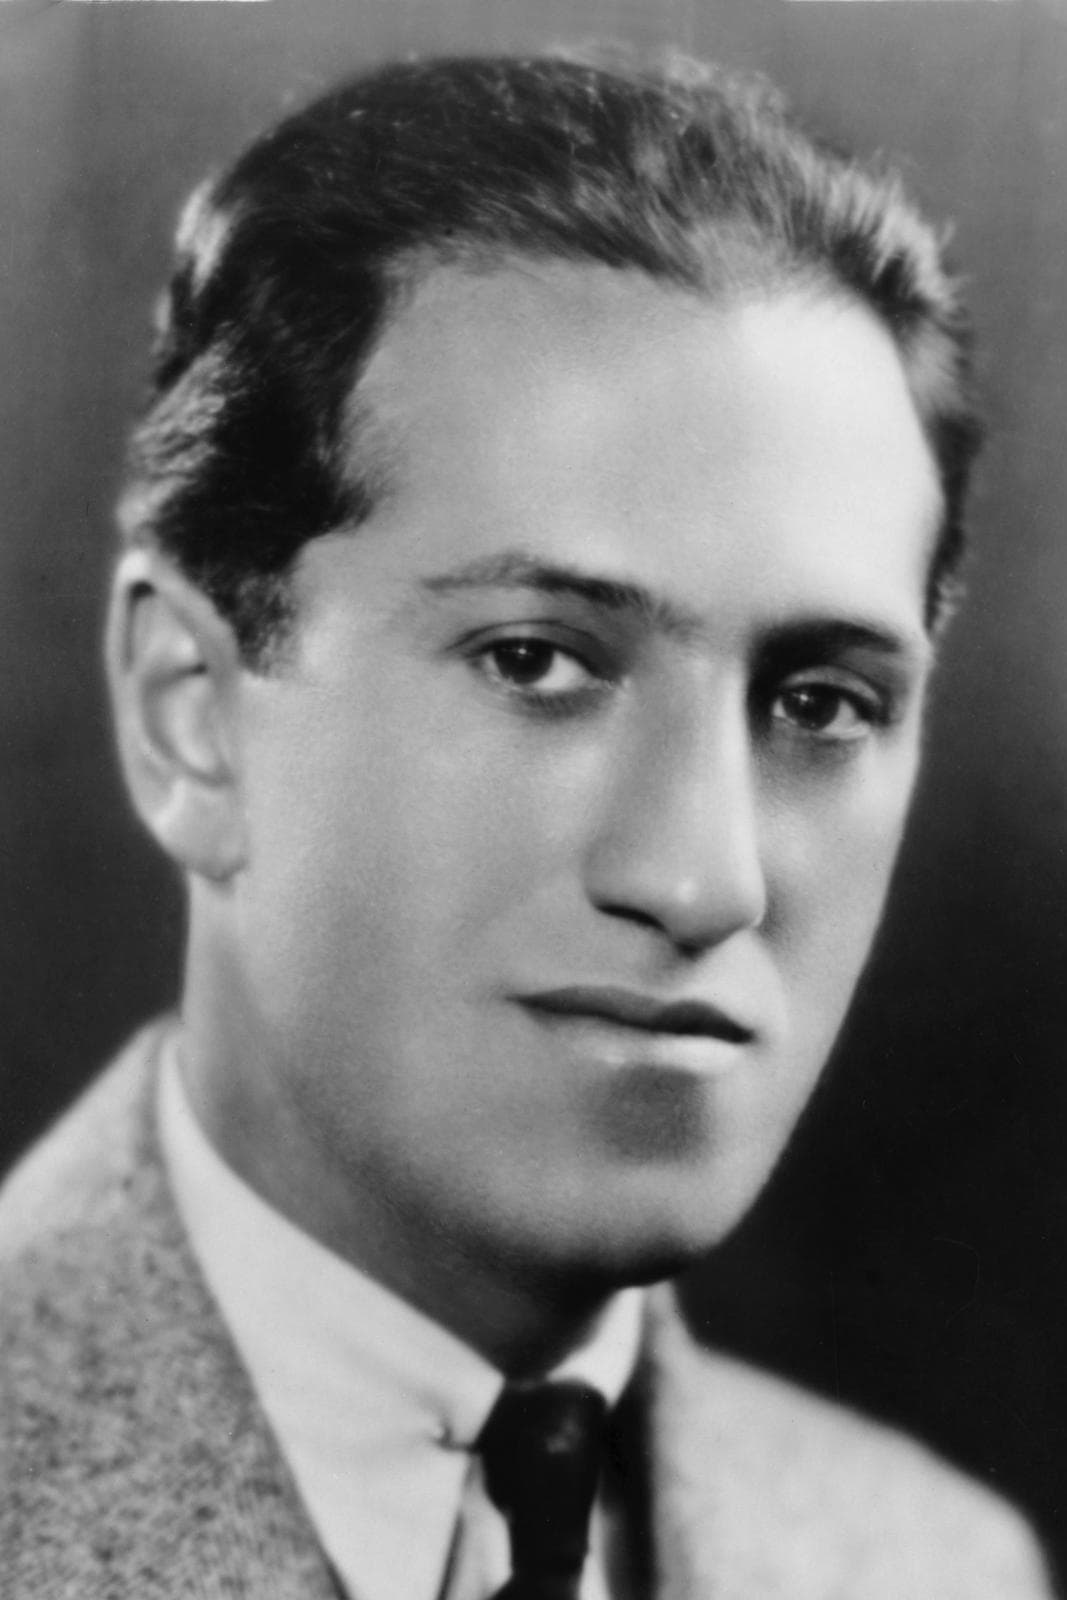 George Gershwin